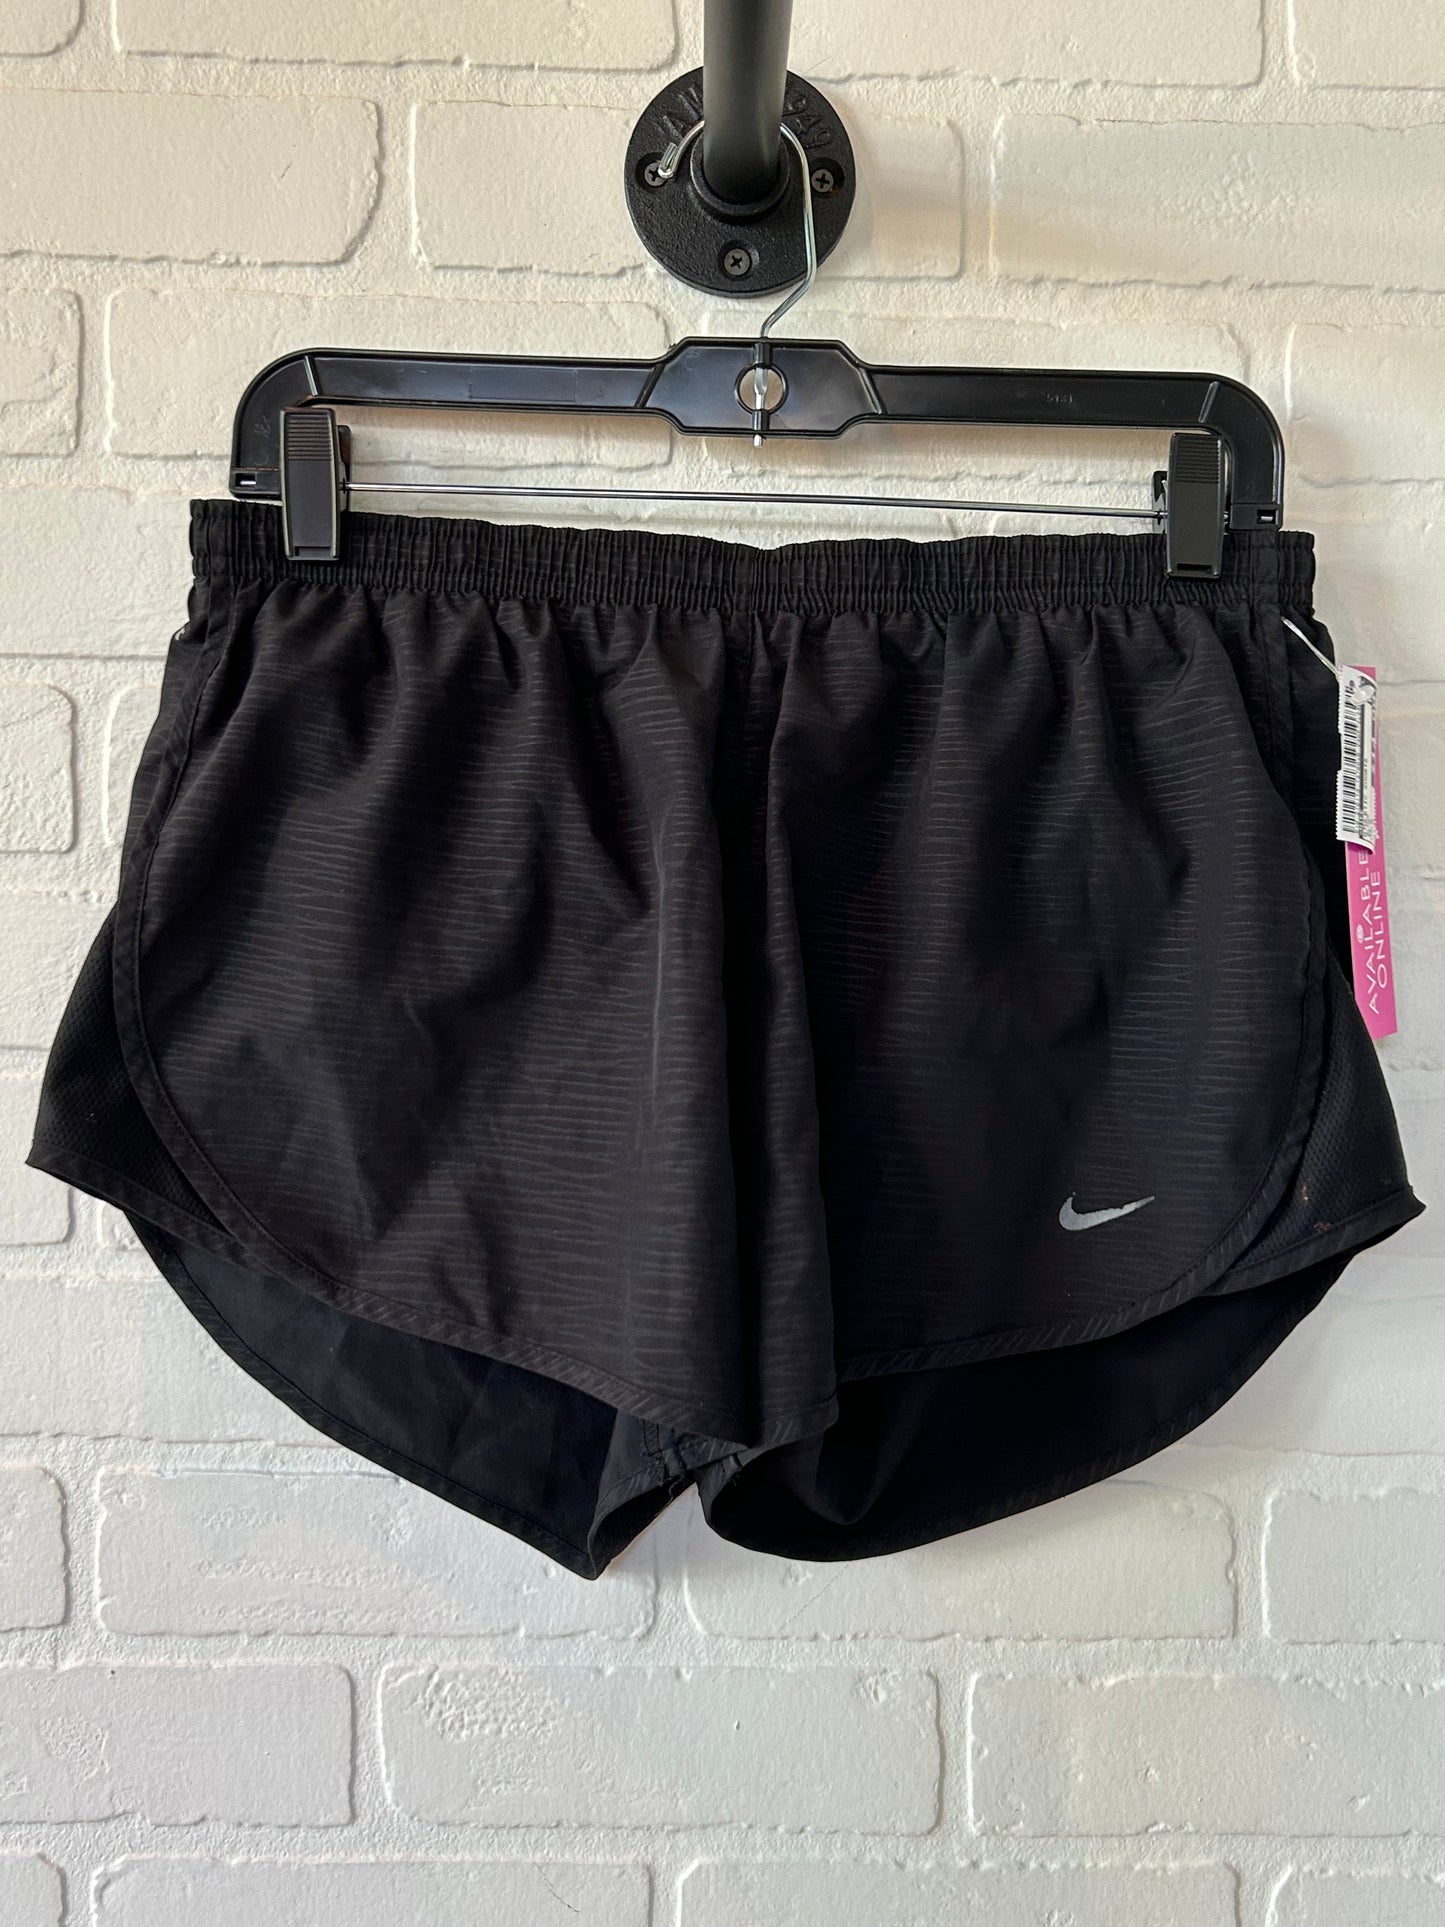 Black Athletic Shorts Nike, Size 8